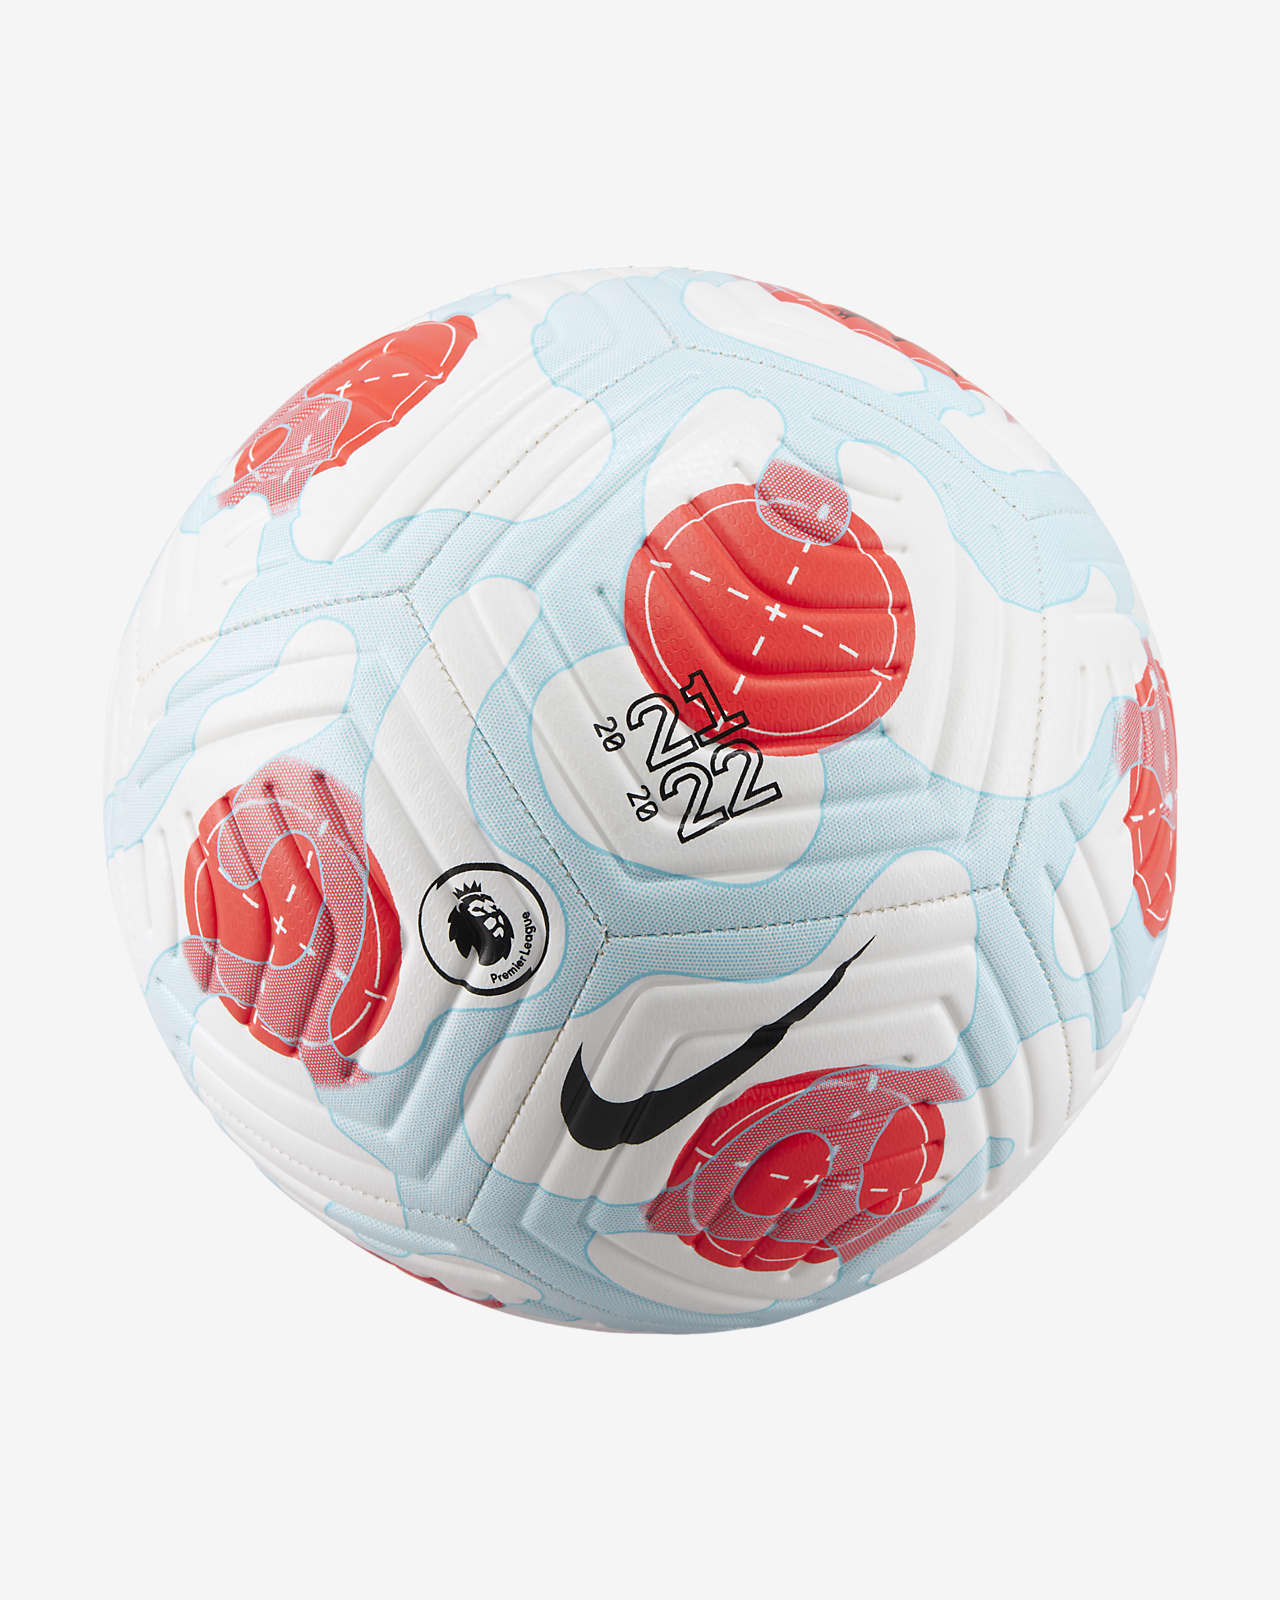 almuerzo cualquier cosa Intuición Balón de fútbol Premier League Strike Third. Nike.com